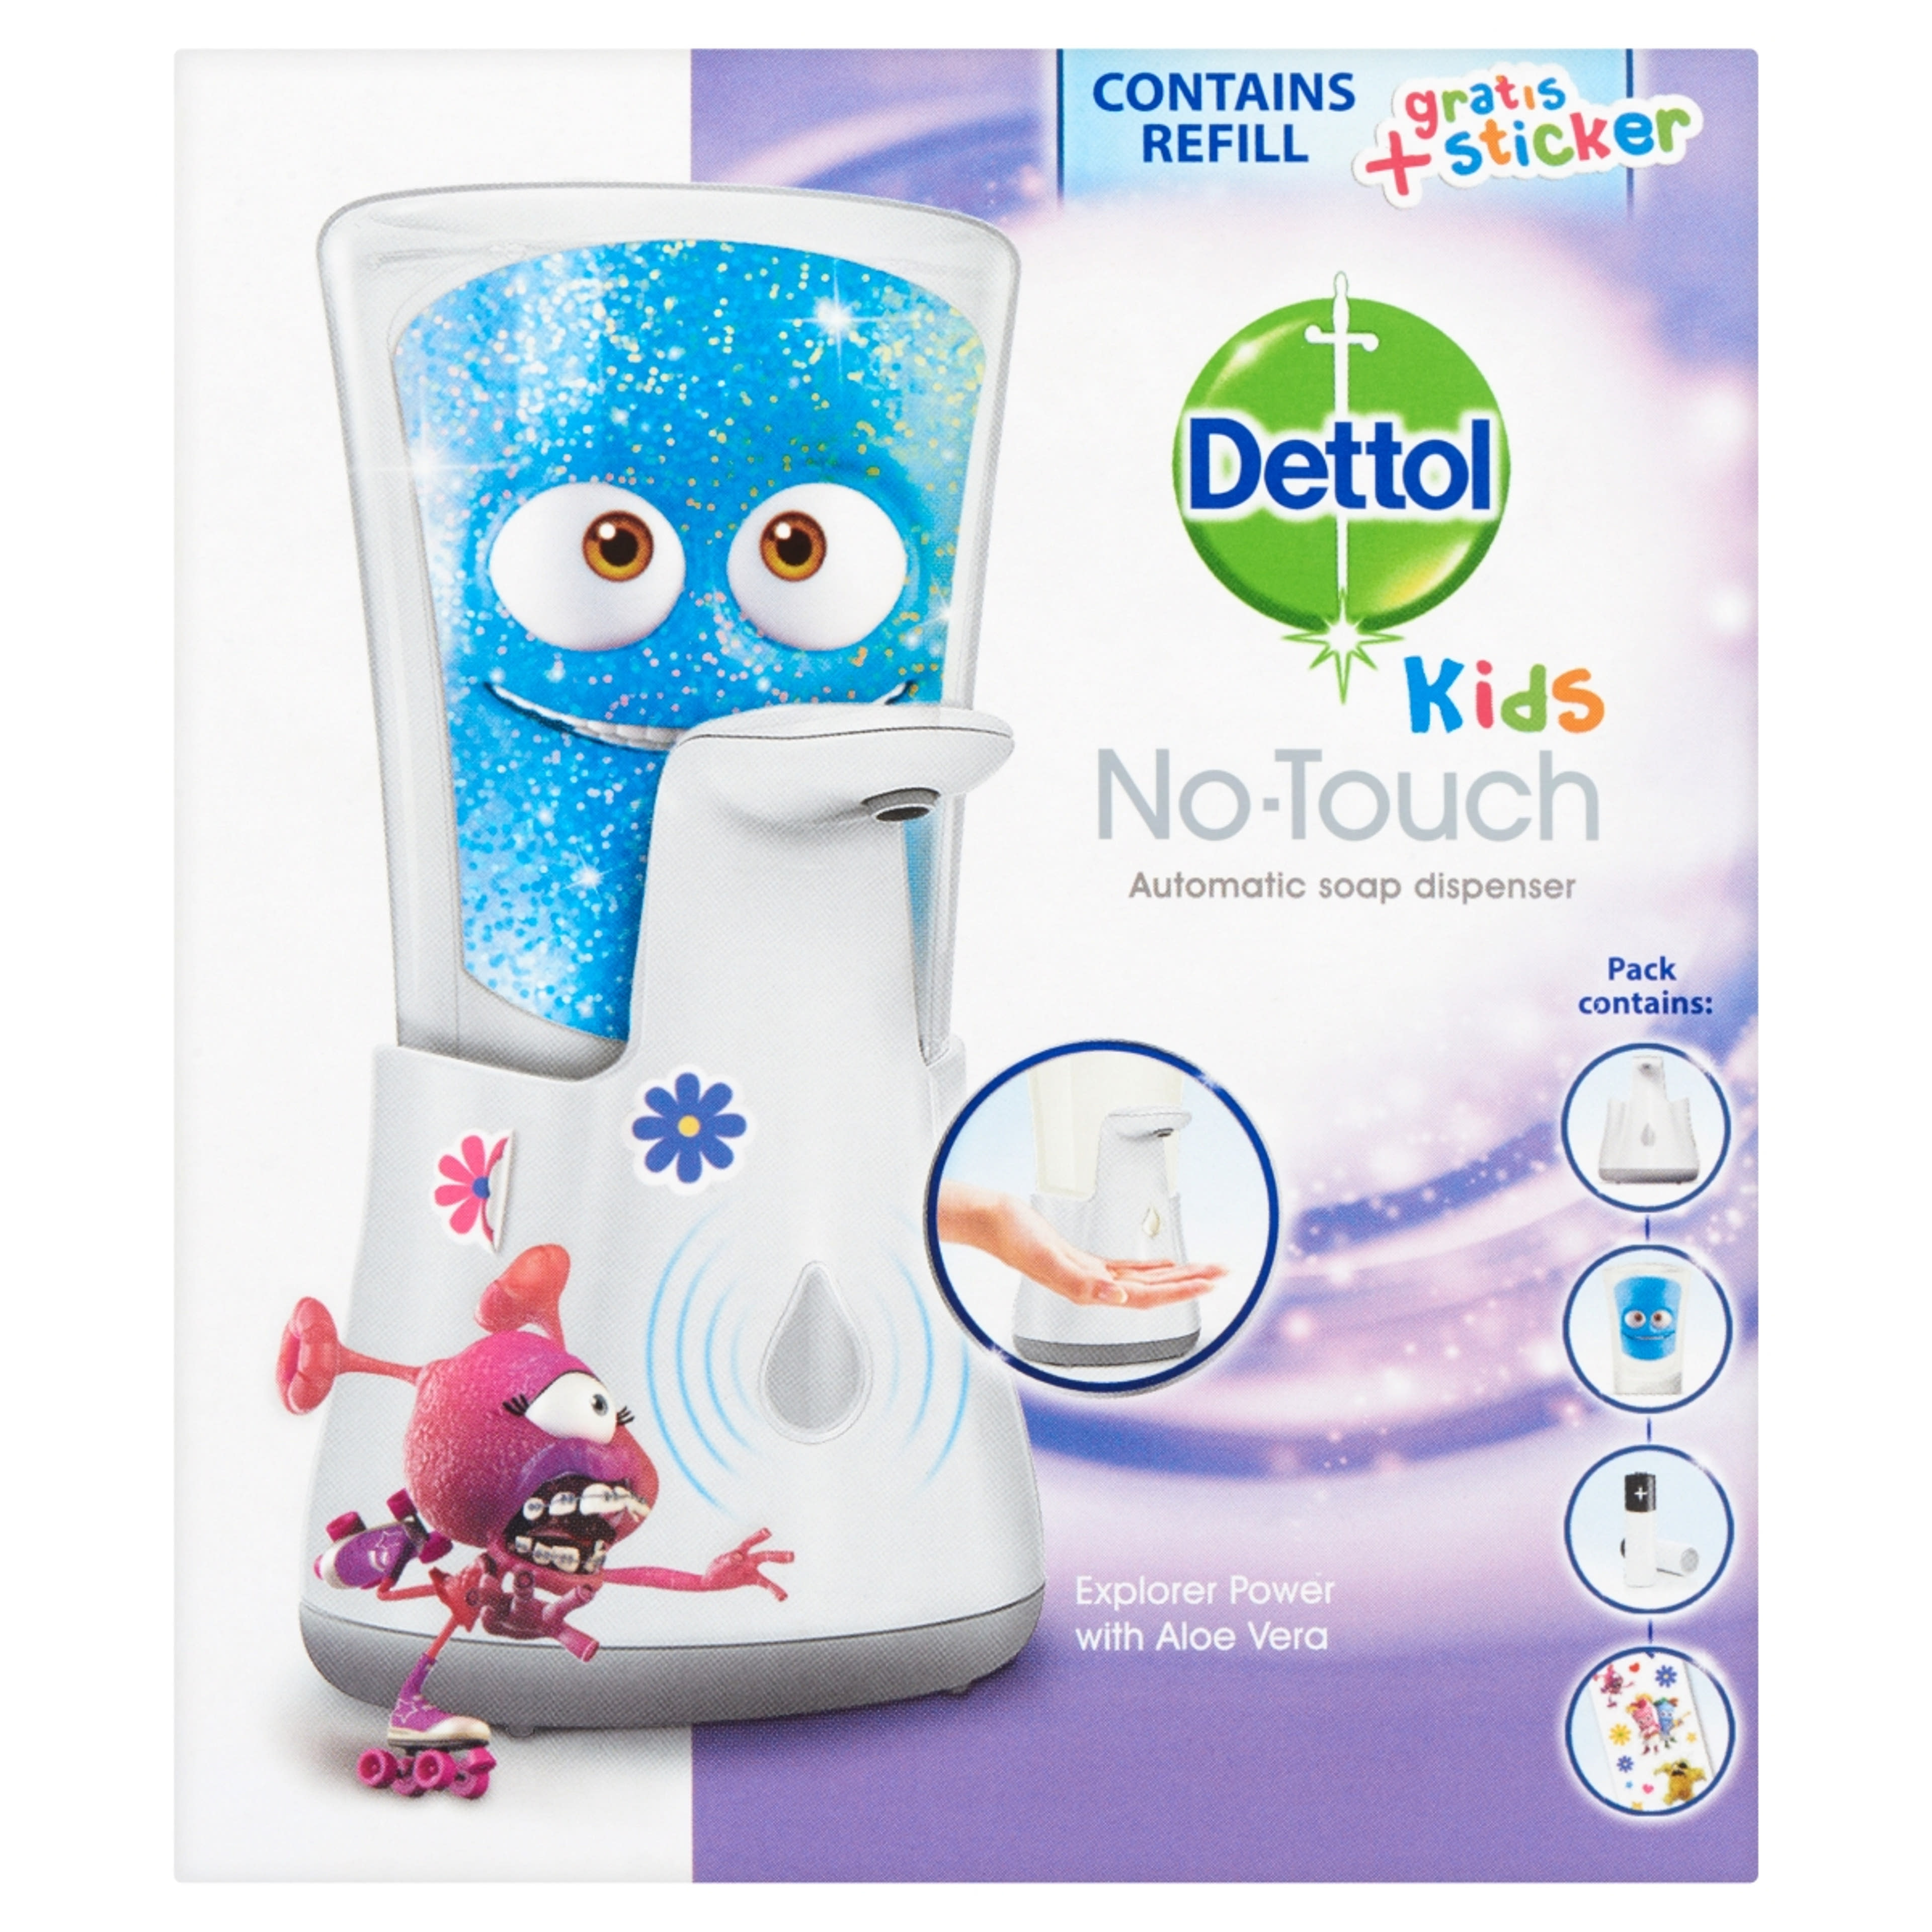 Dettol Kids érintés nélküli kézmosó készülék + utántöltő Aloe Vera - 1 db-1